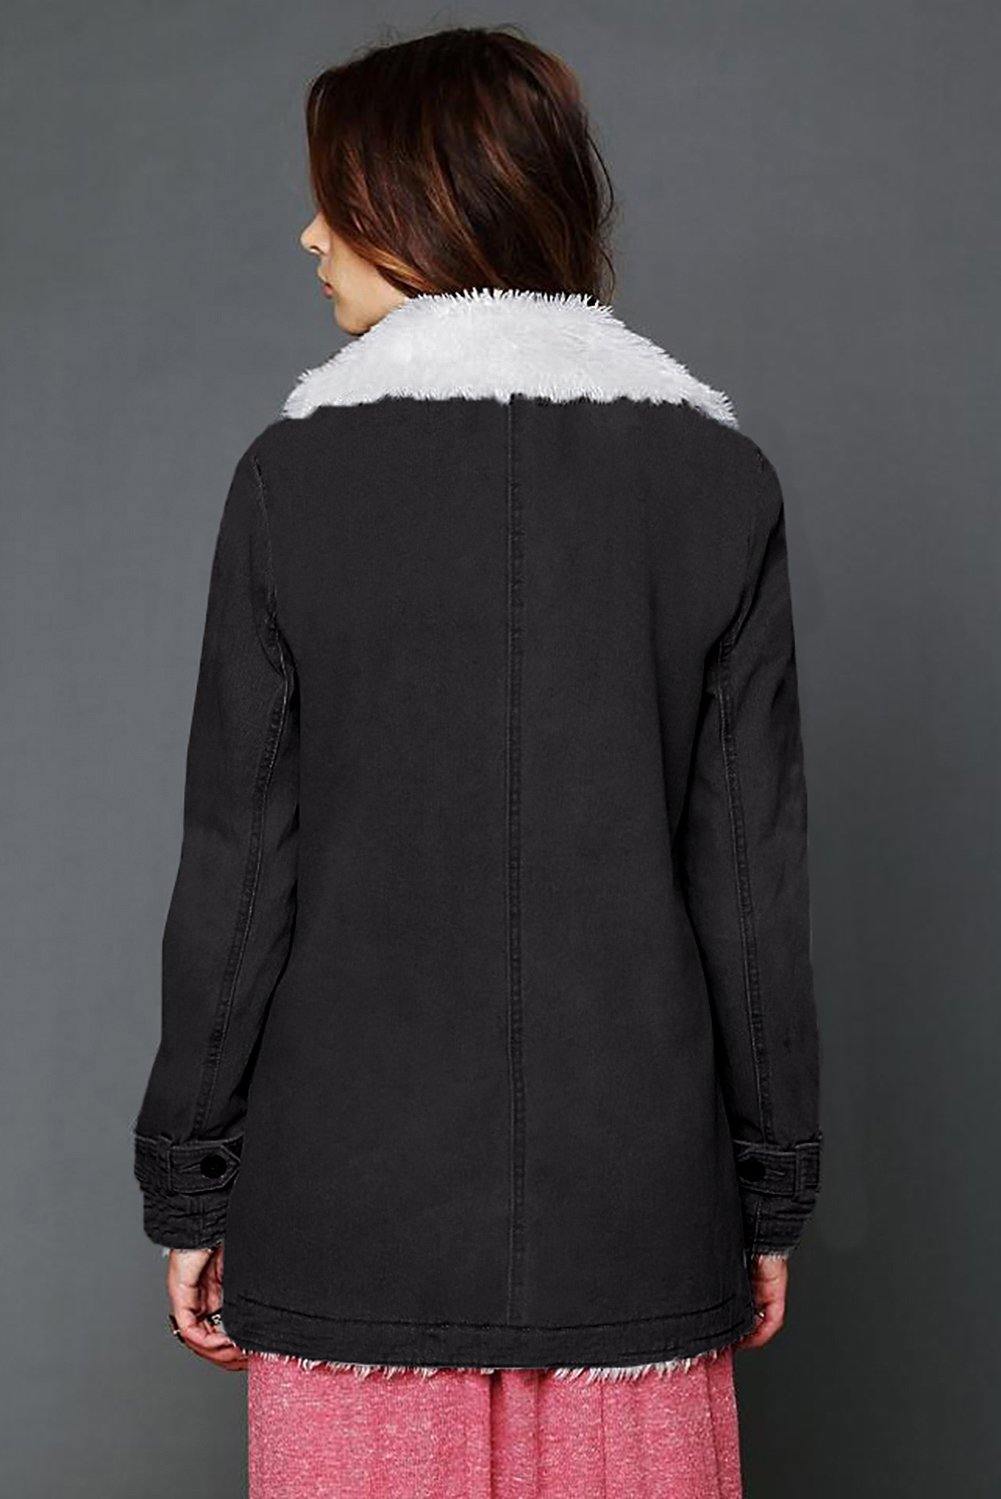 Lapel Collar All Denim Wool Warm Coat - L & M Kee, LLC